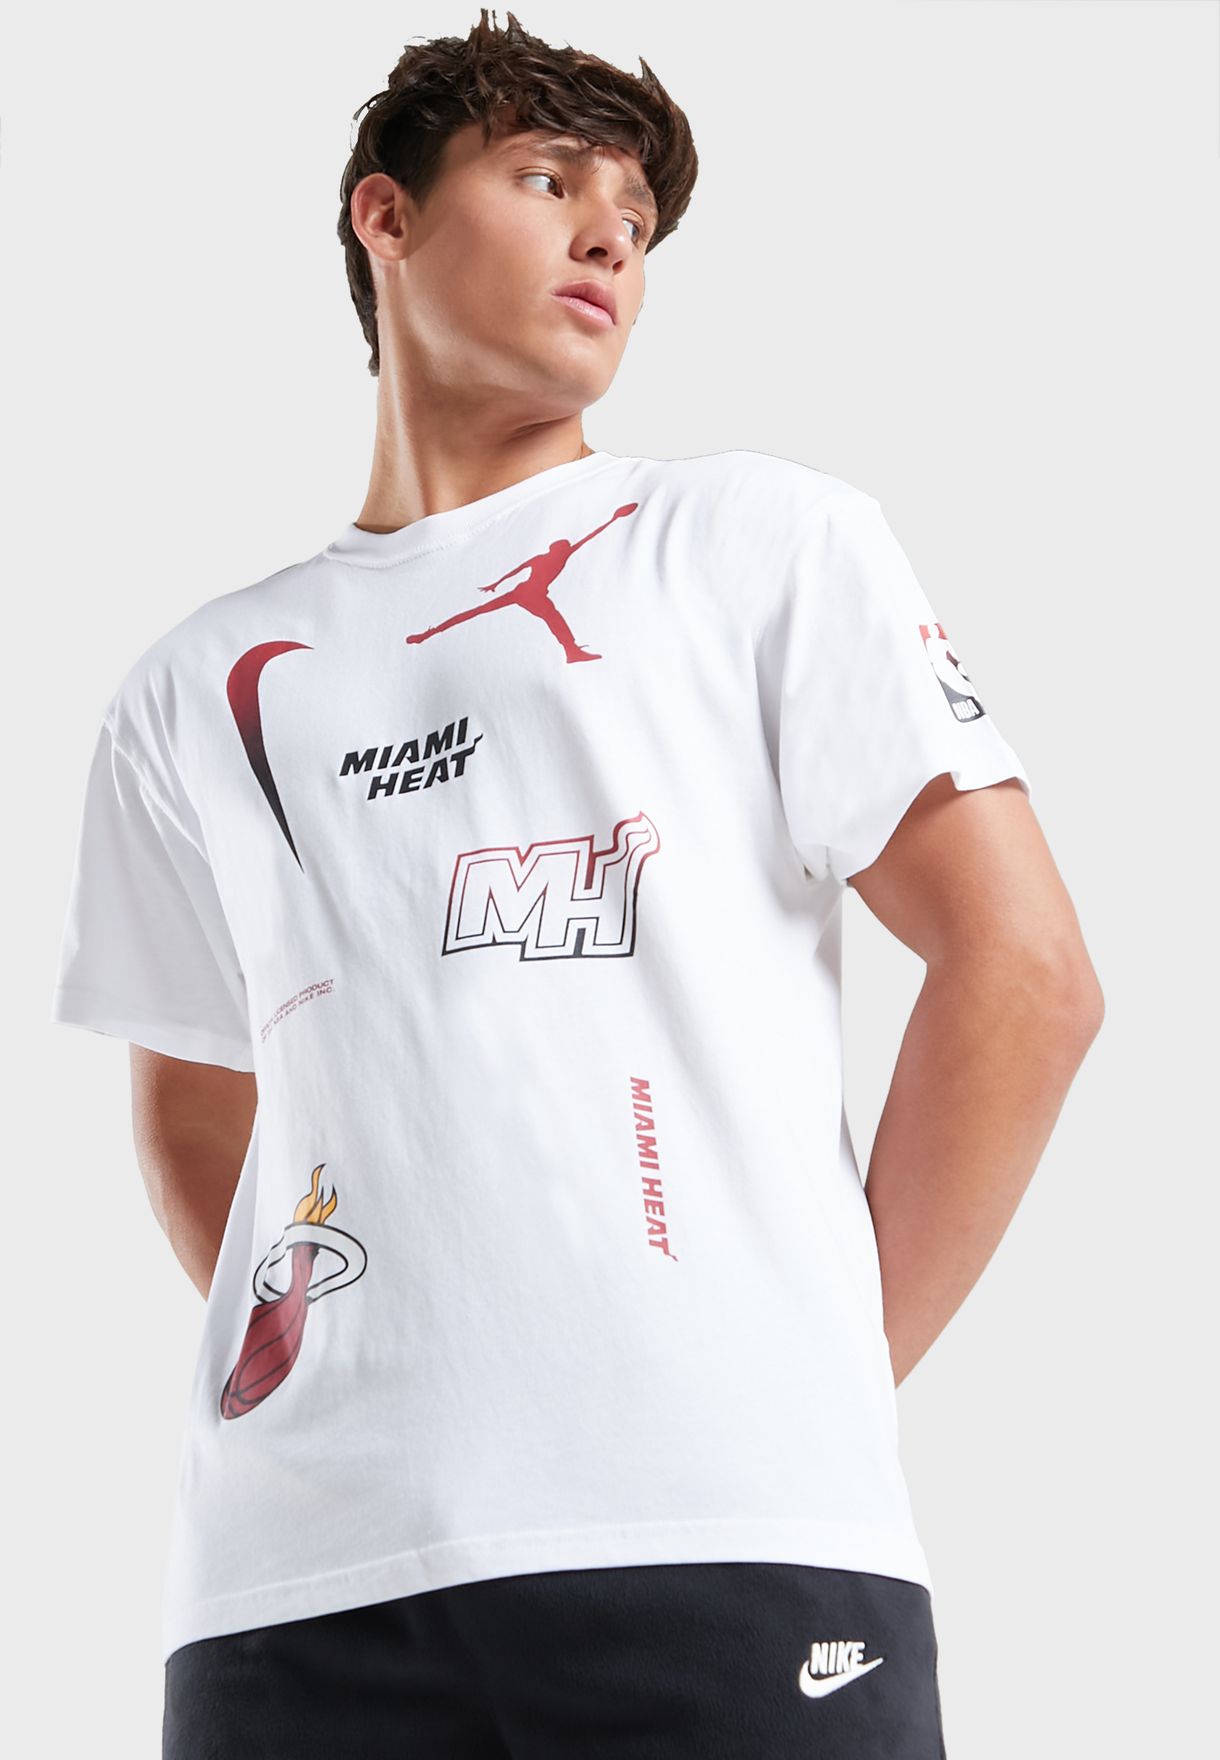 Miami Heat Statement Max90 1 T-Shirt